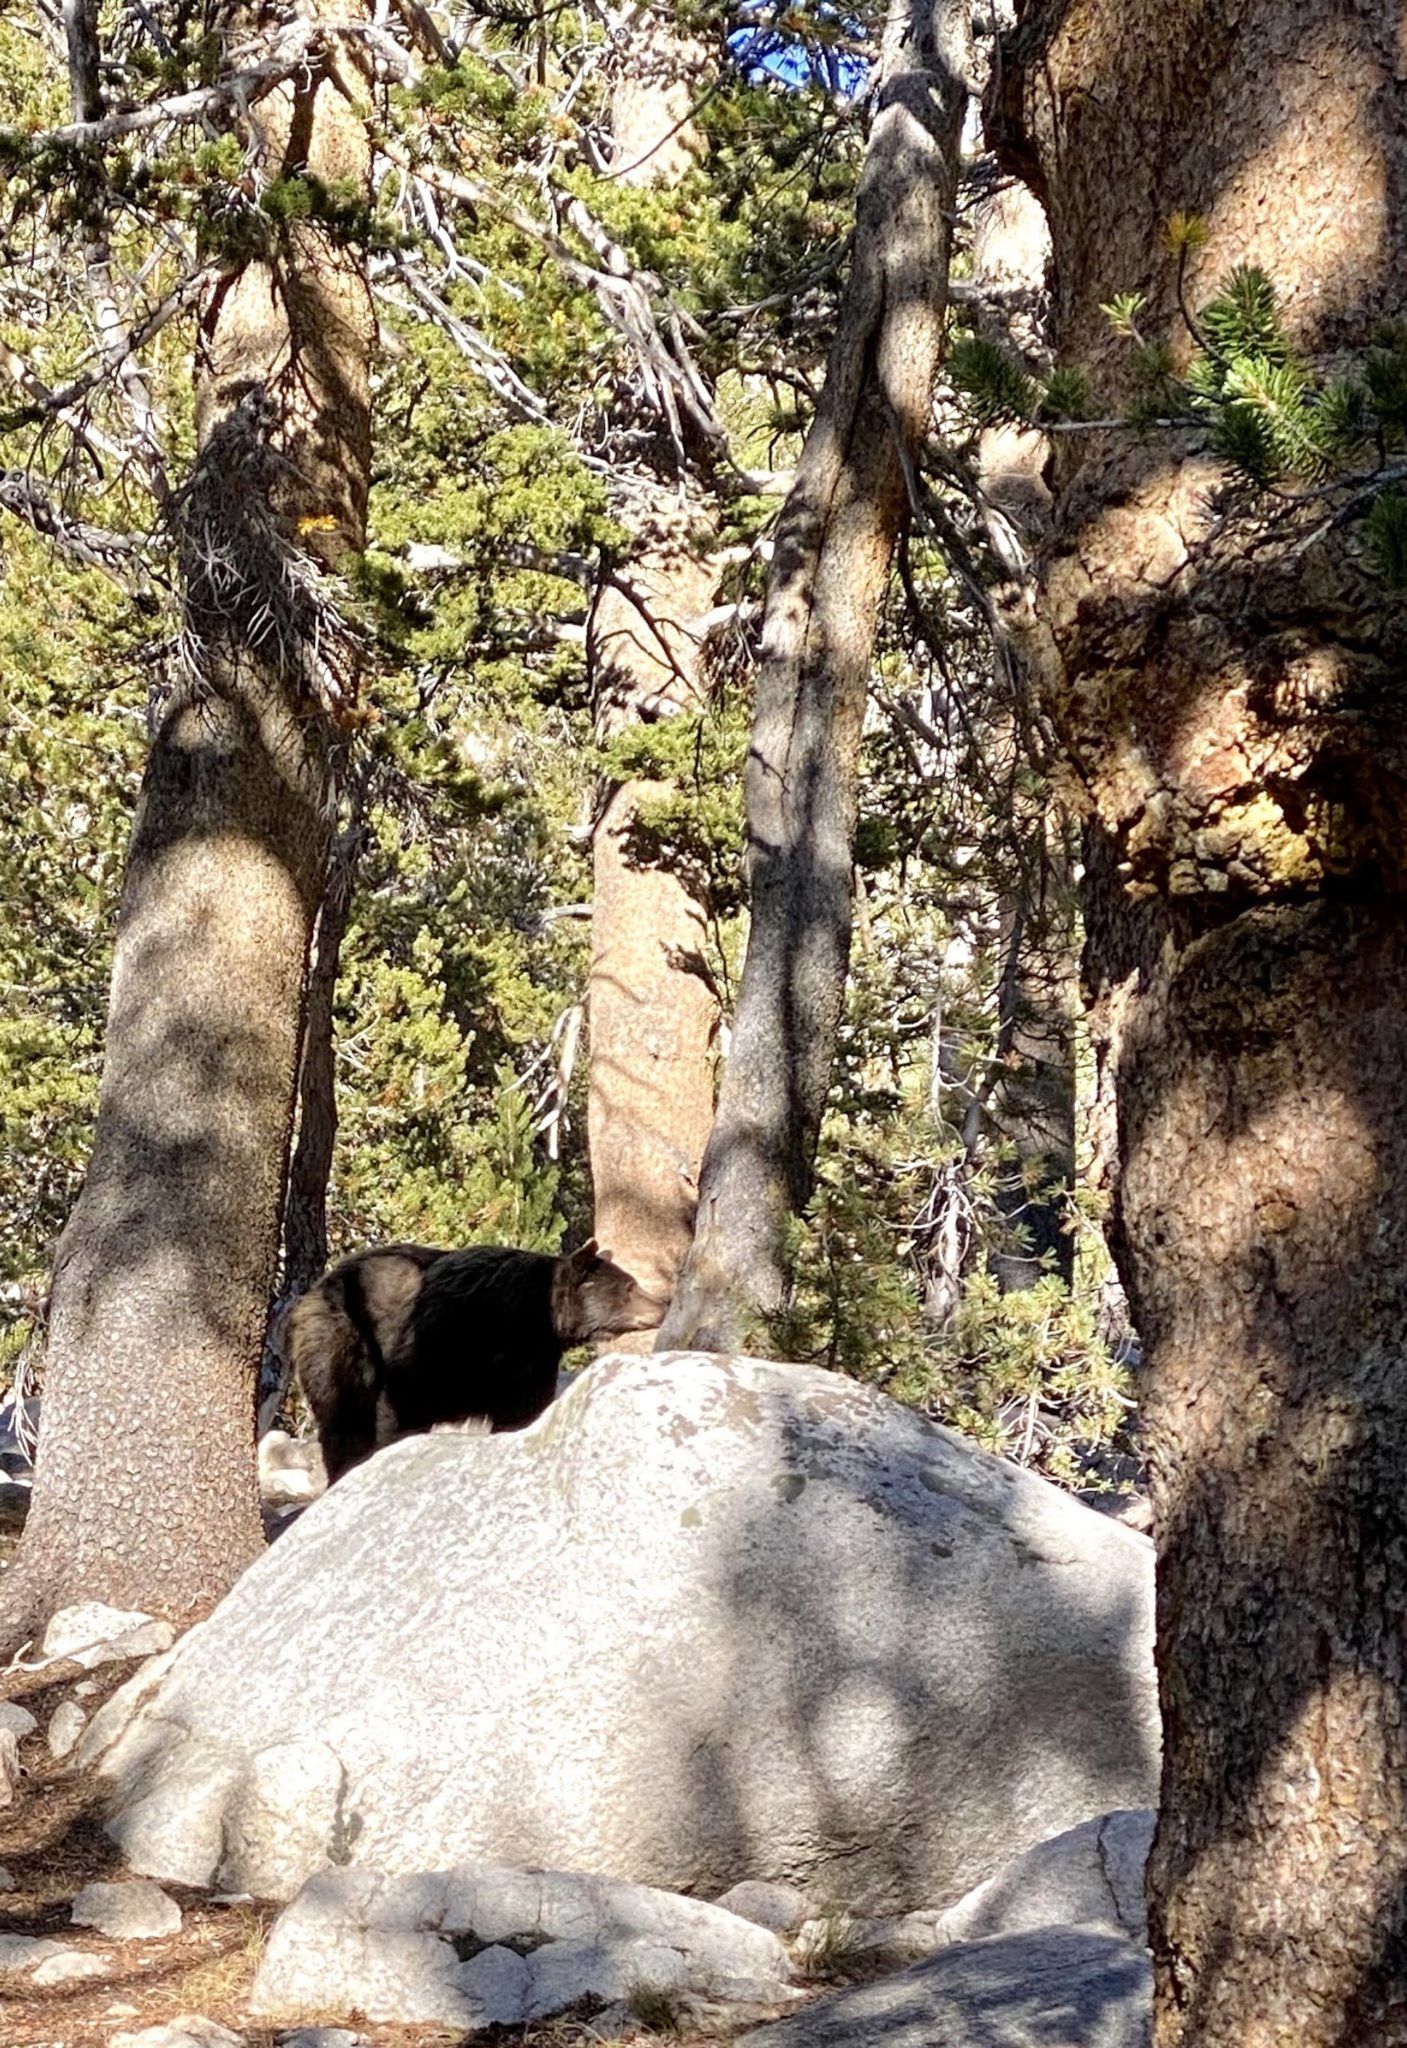 A black bear behind a rock